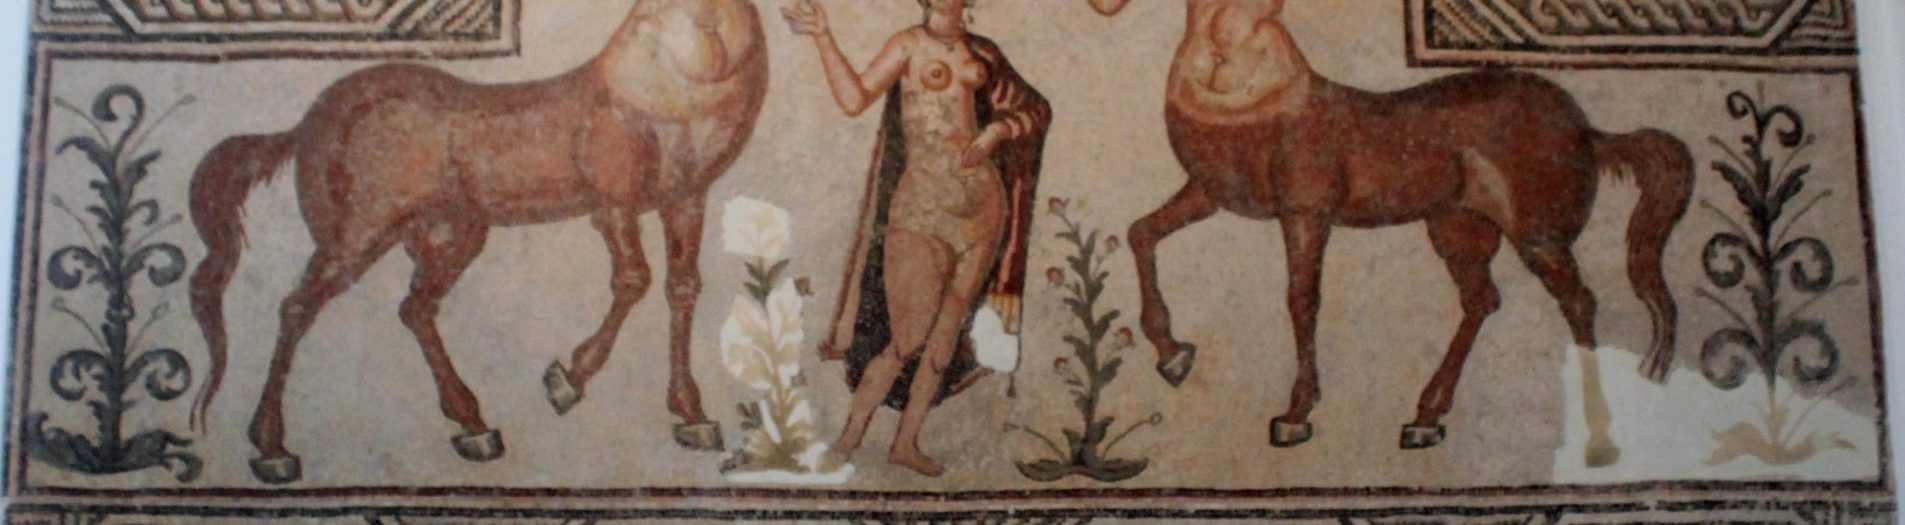 Vénus dans la mosaïque africaine de la période romaine en Tunisie